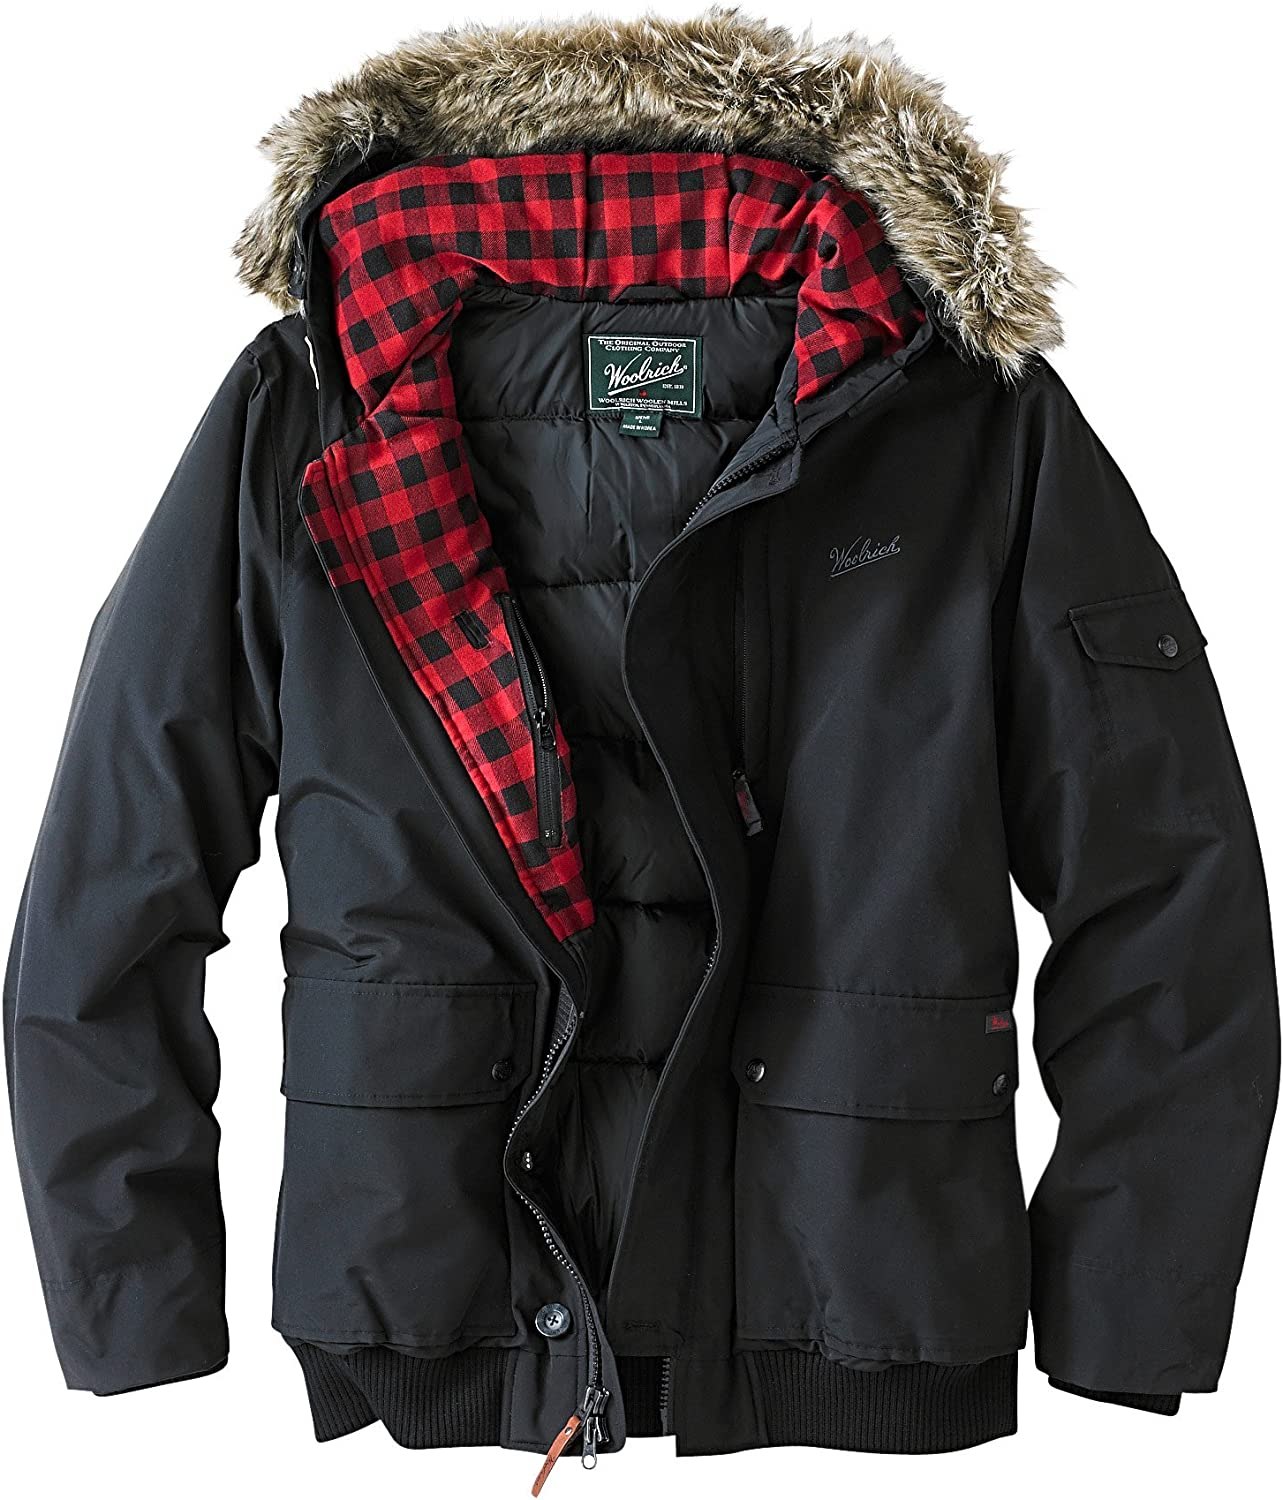 Финский зимний куртки мужские. Woolrich est 1830. Woolrich Аляска мужская. Куртка Вулрич. Куртка Woolrich ellende.